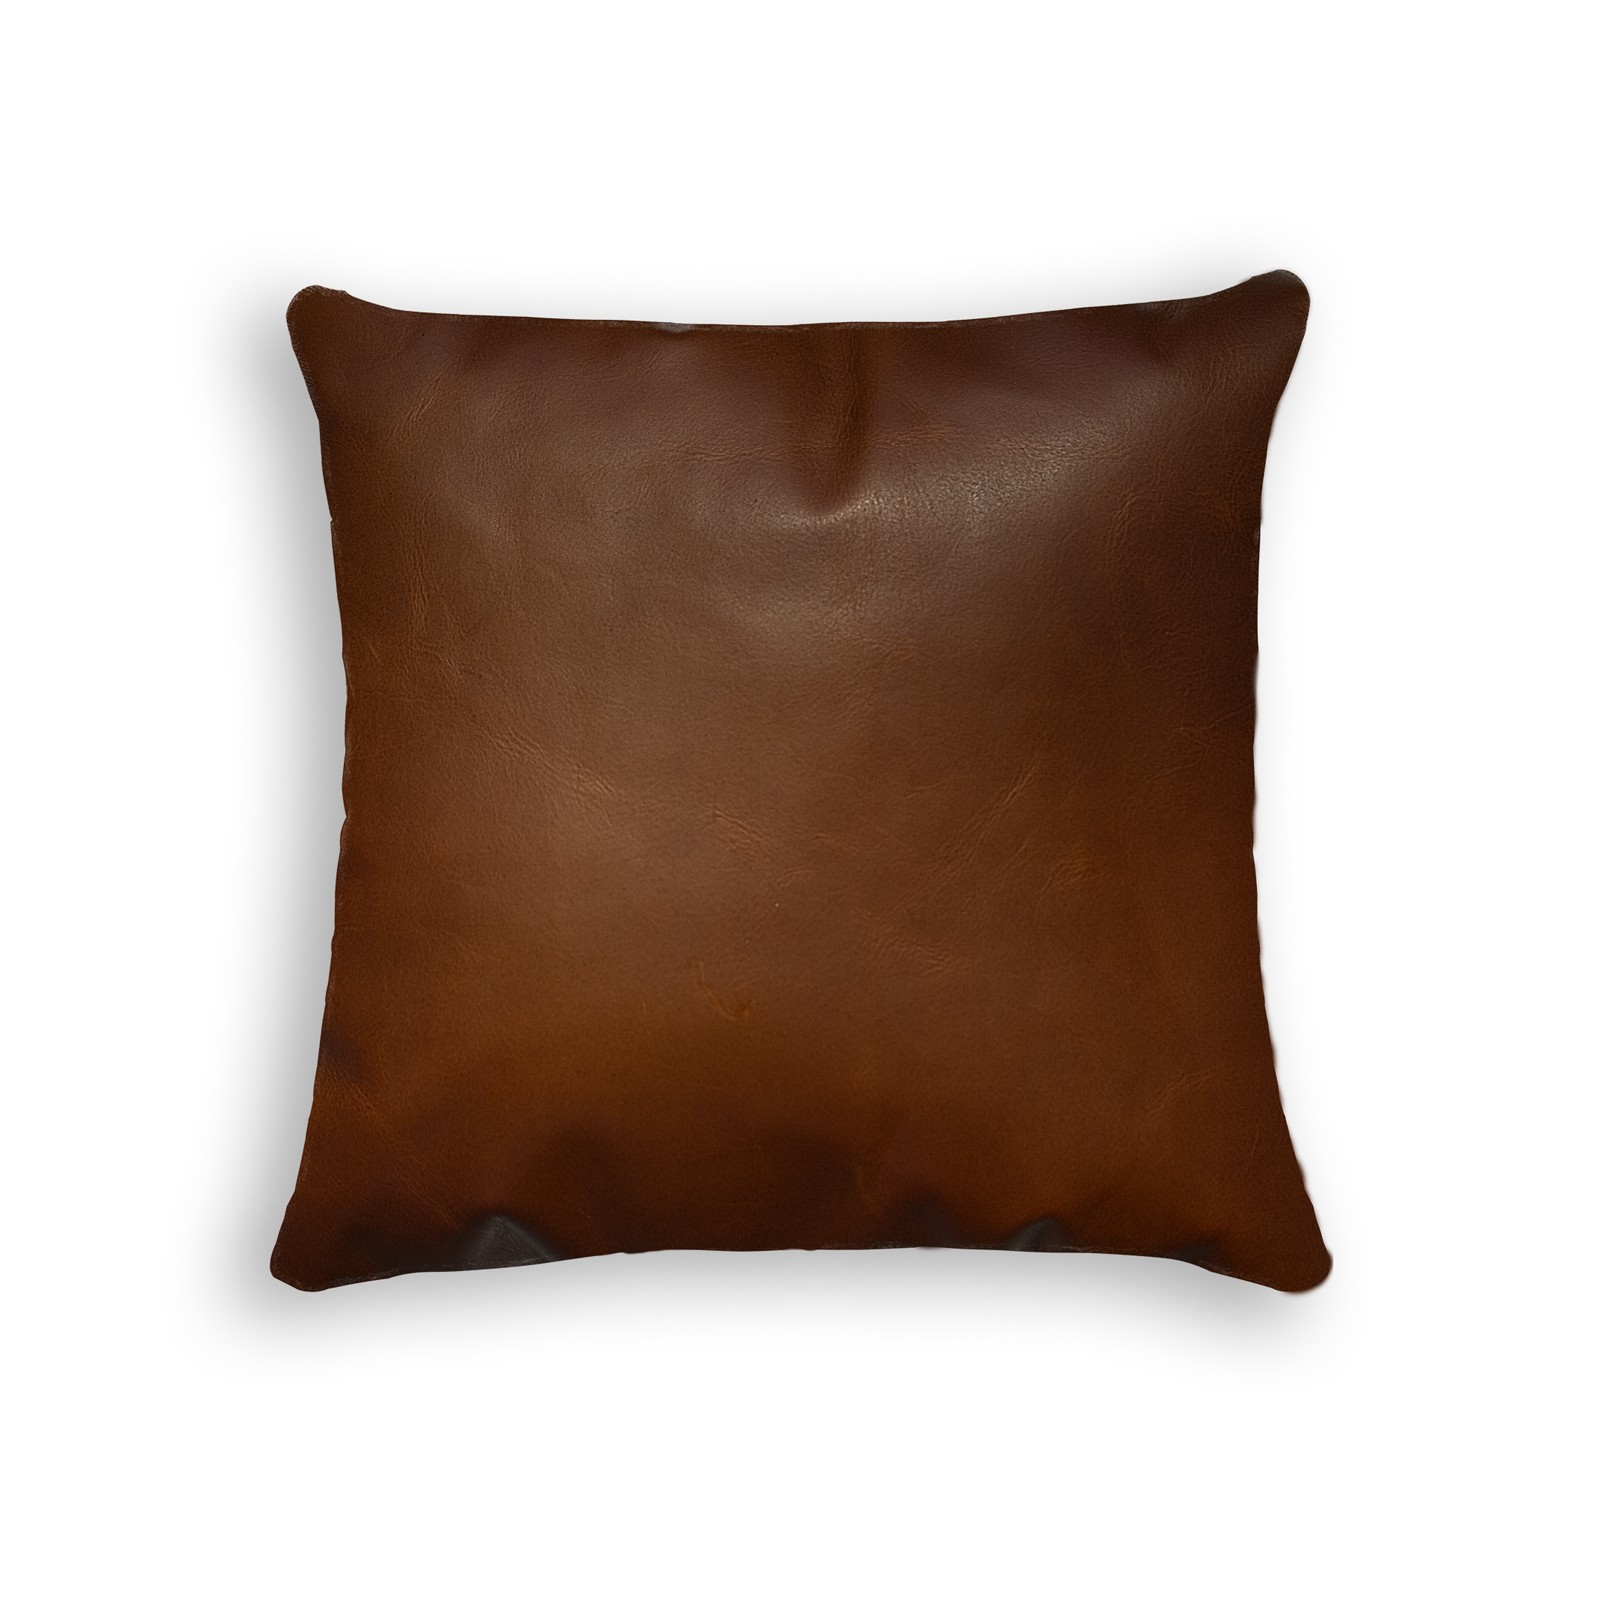 16" x 16" x 5" Cognac, Cowhide Leather - Pillow